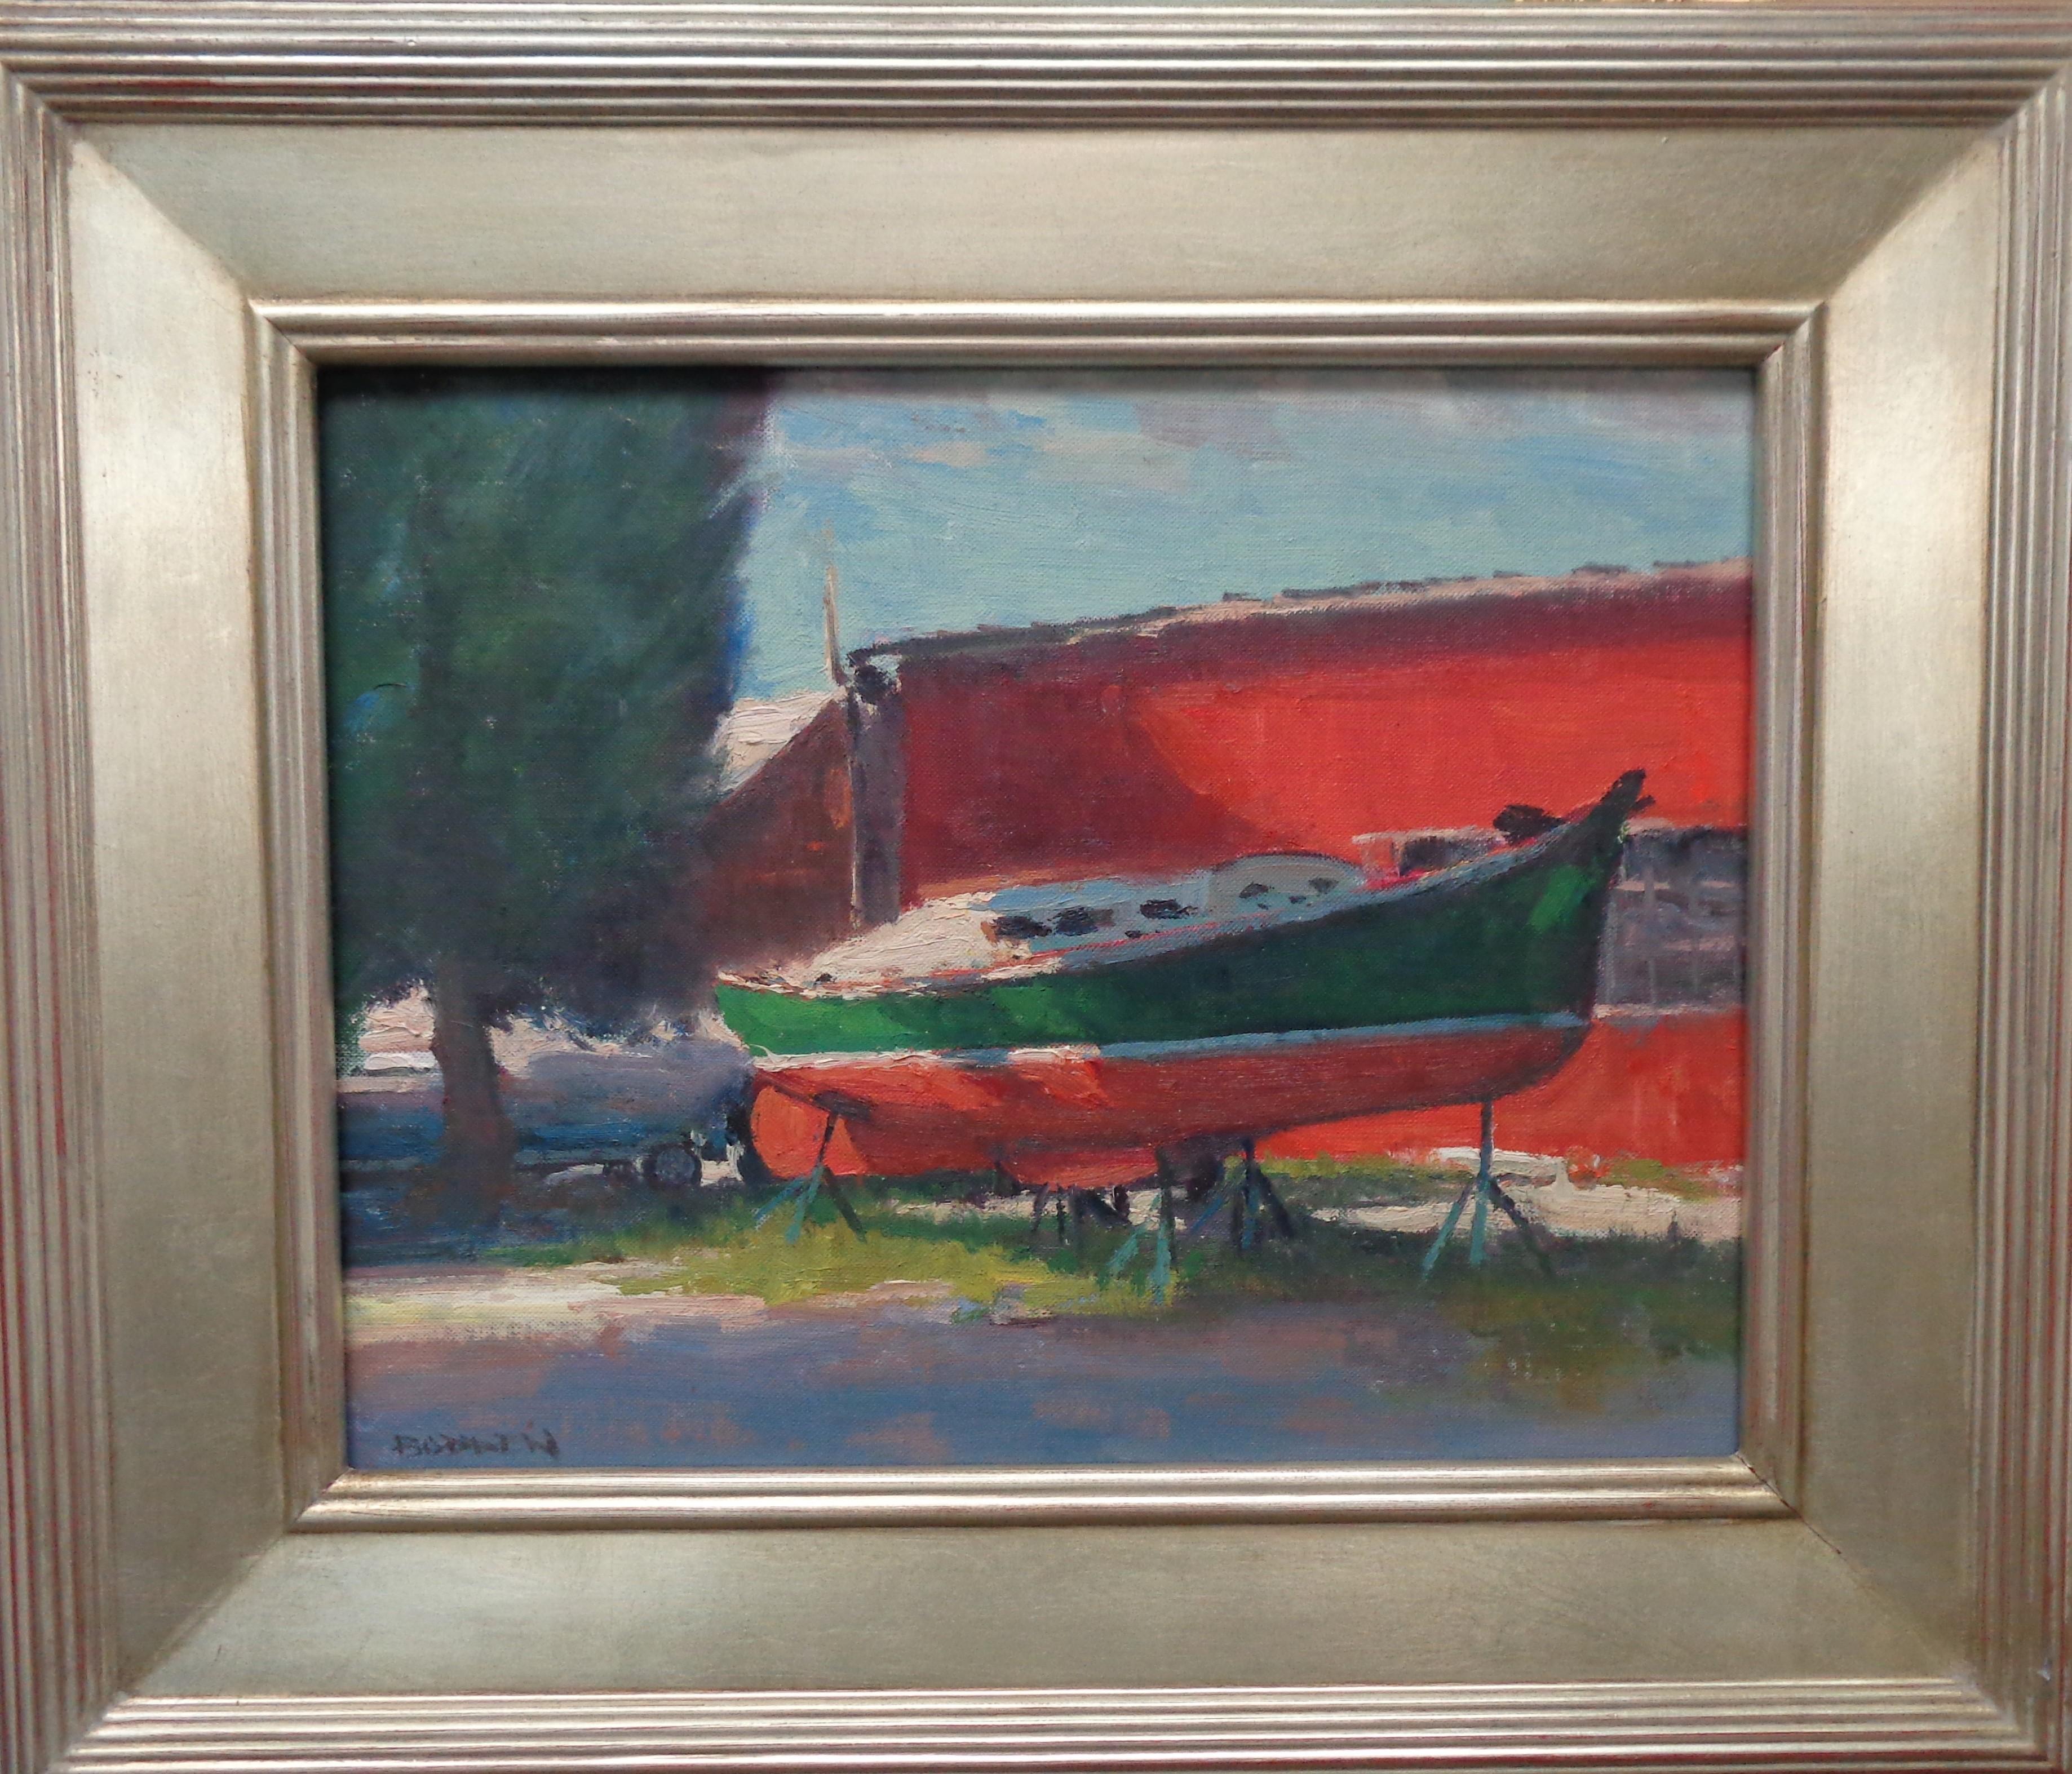 Peinture fraîche
huile/panneau 11 x 14 non encadré 16,5 x 19,5 encadré
Fresh Paint est une peinture à l'huile sur toile de l'artiste contemporain primé Michael Coates qui met en valeur un beau bateau avec une couche de peinture fraîche provenant de